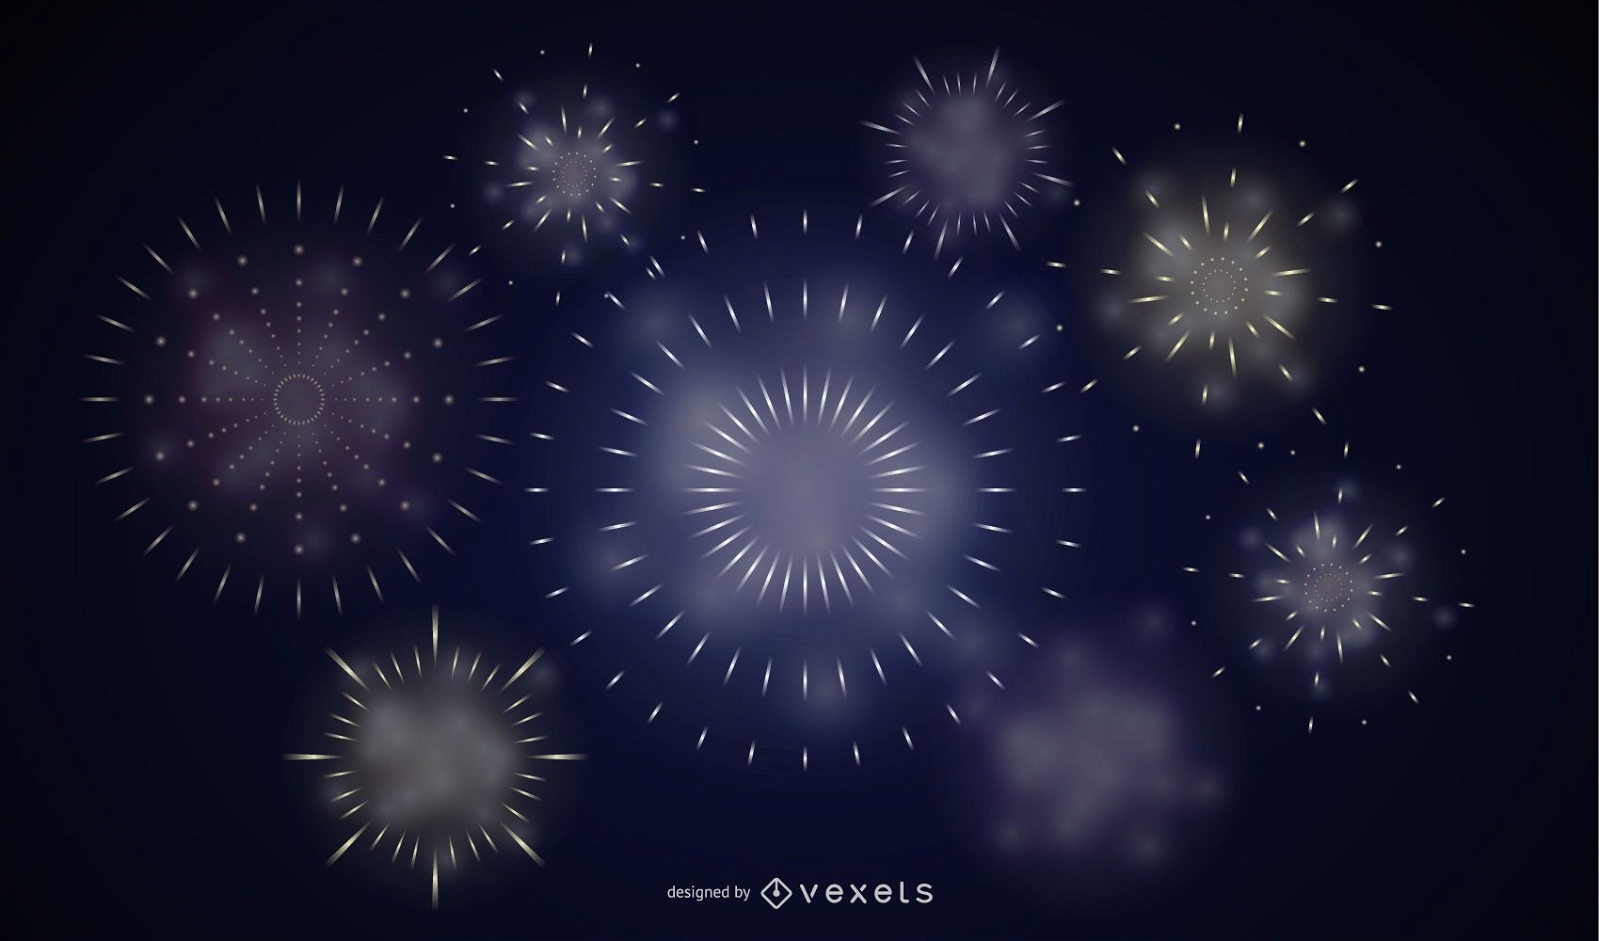 Fireworks background design